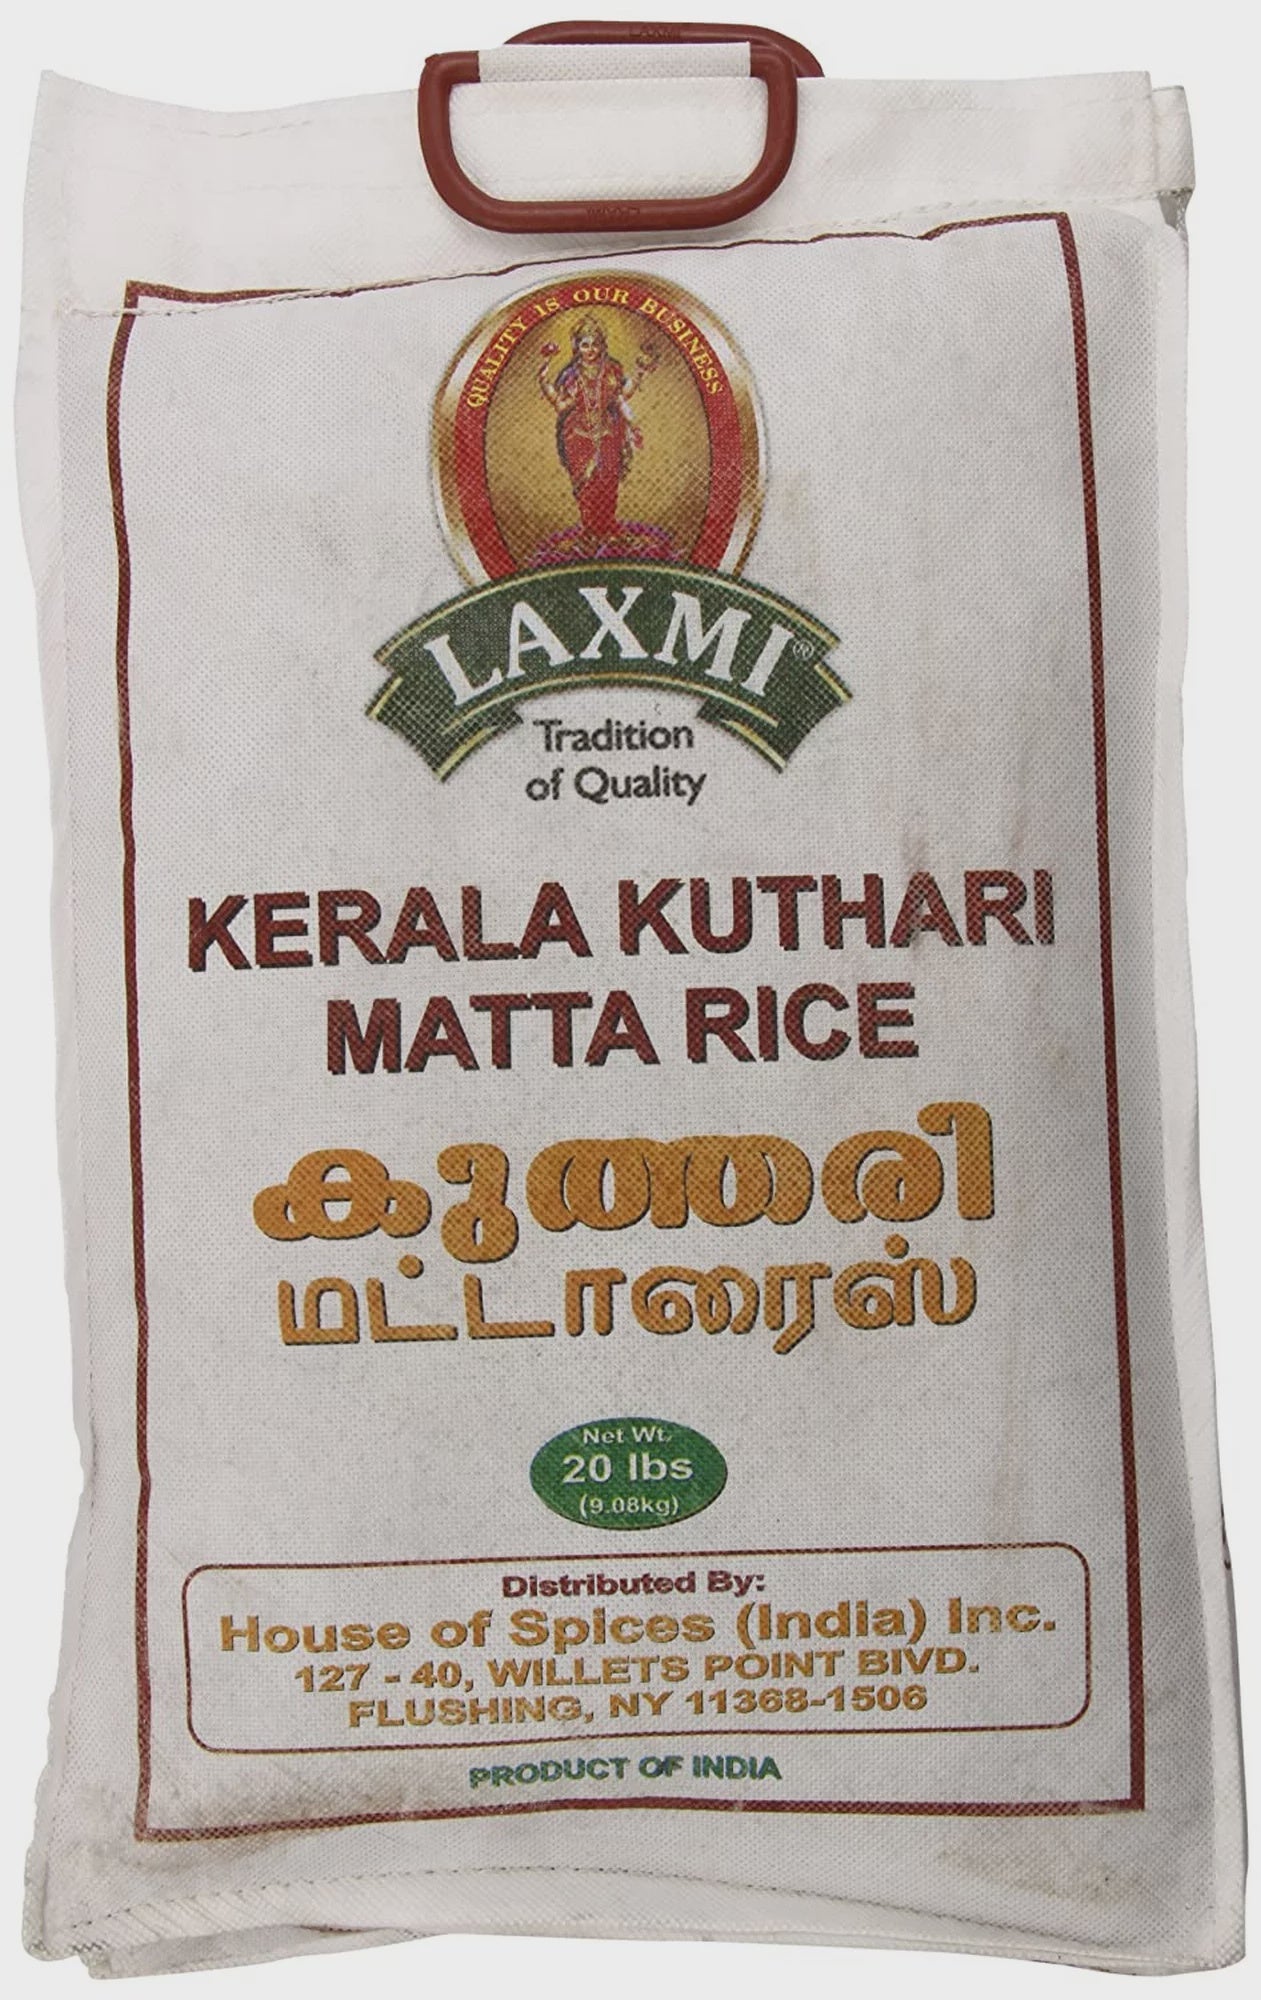 Laxmi - Kerala Matta Rice 20lb